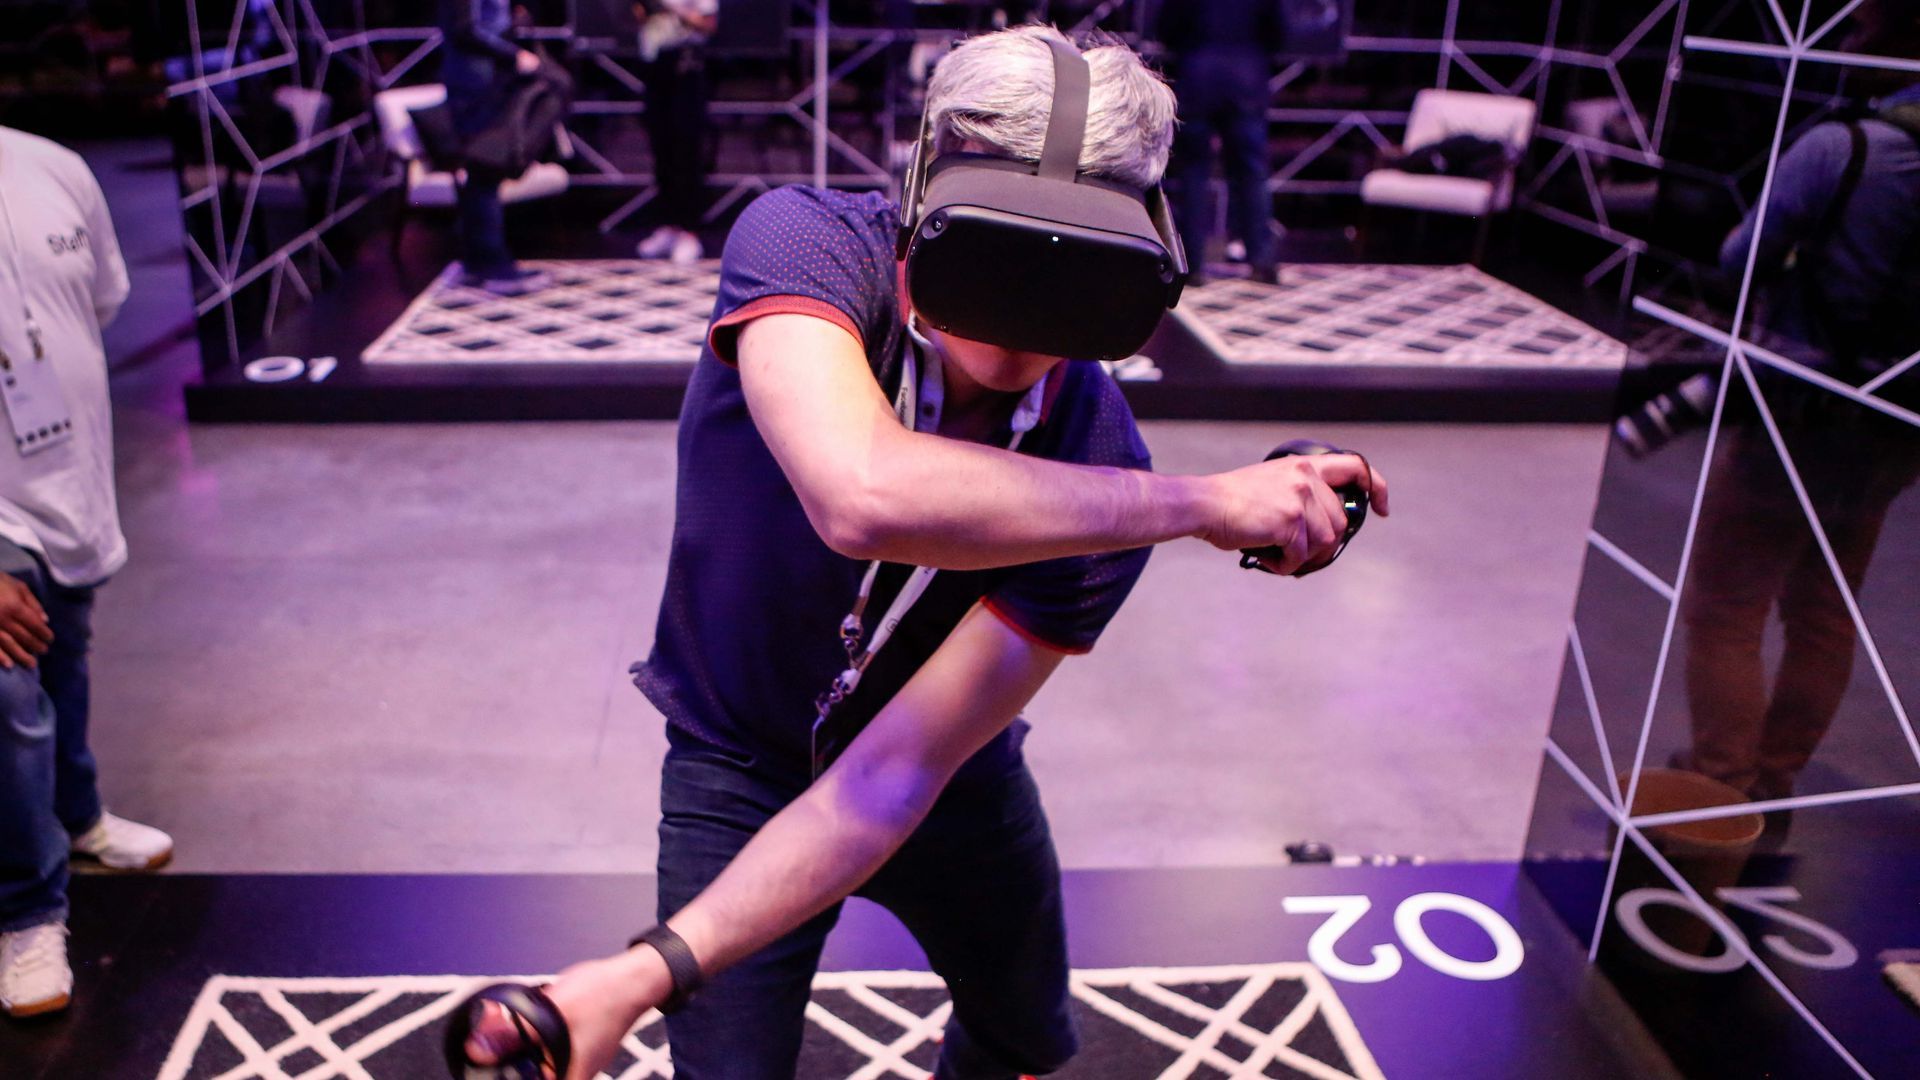 A gamer wearing an Oculus headset